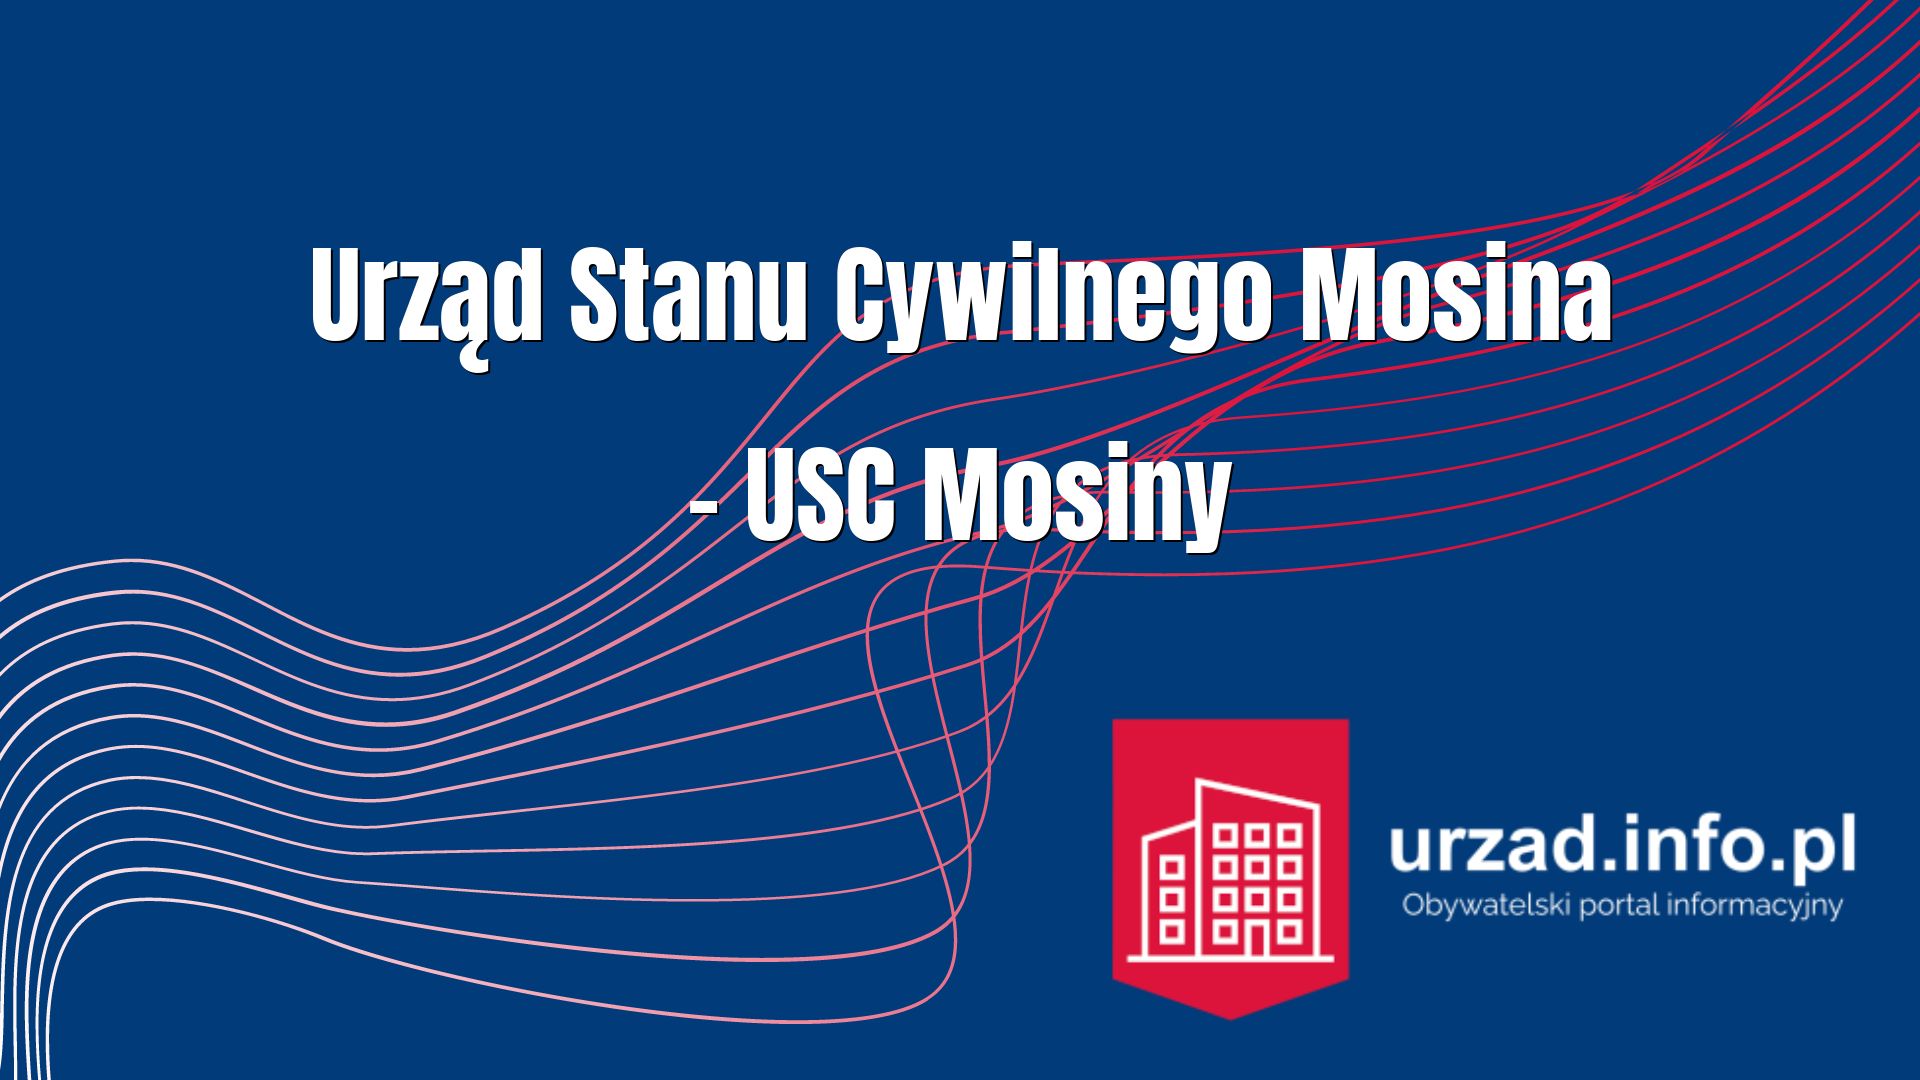 Urząd Stanu Cywilnego Mosina – USC Mosiny